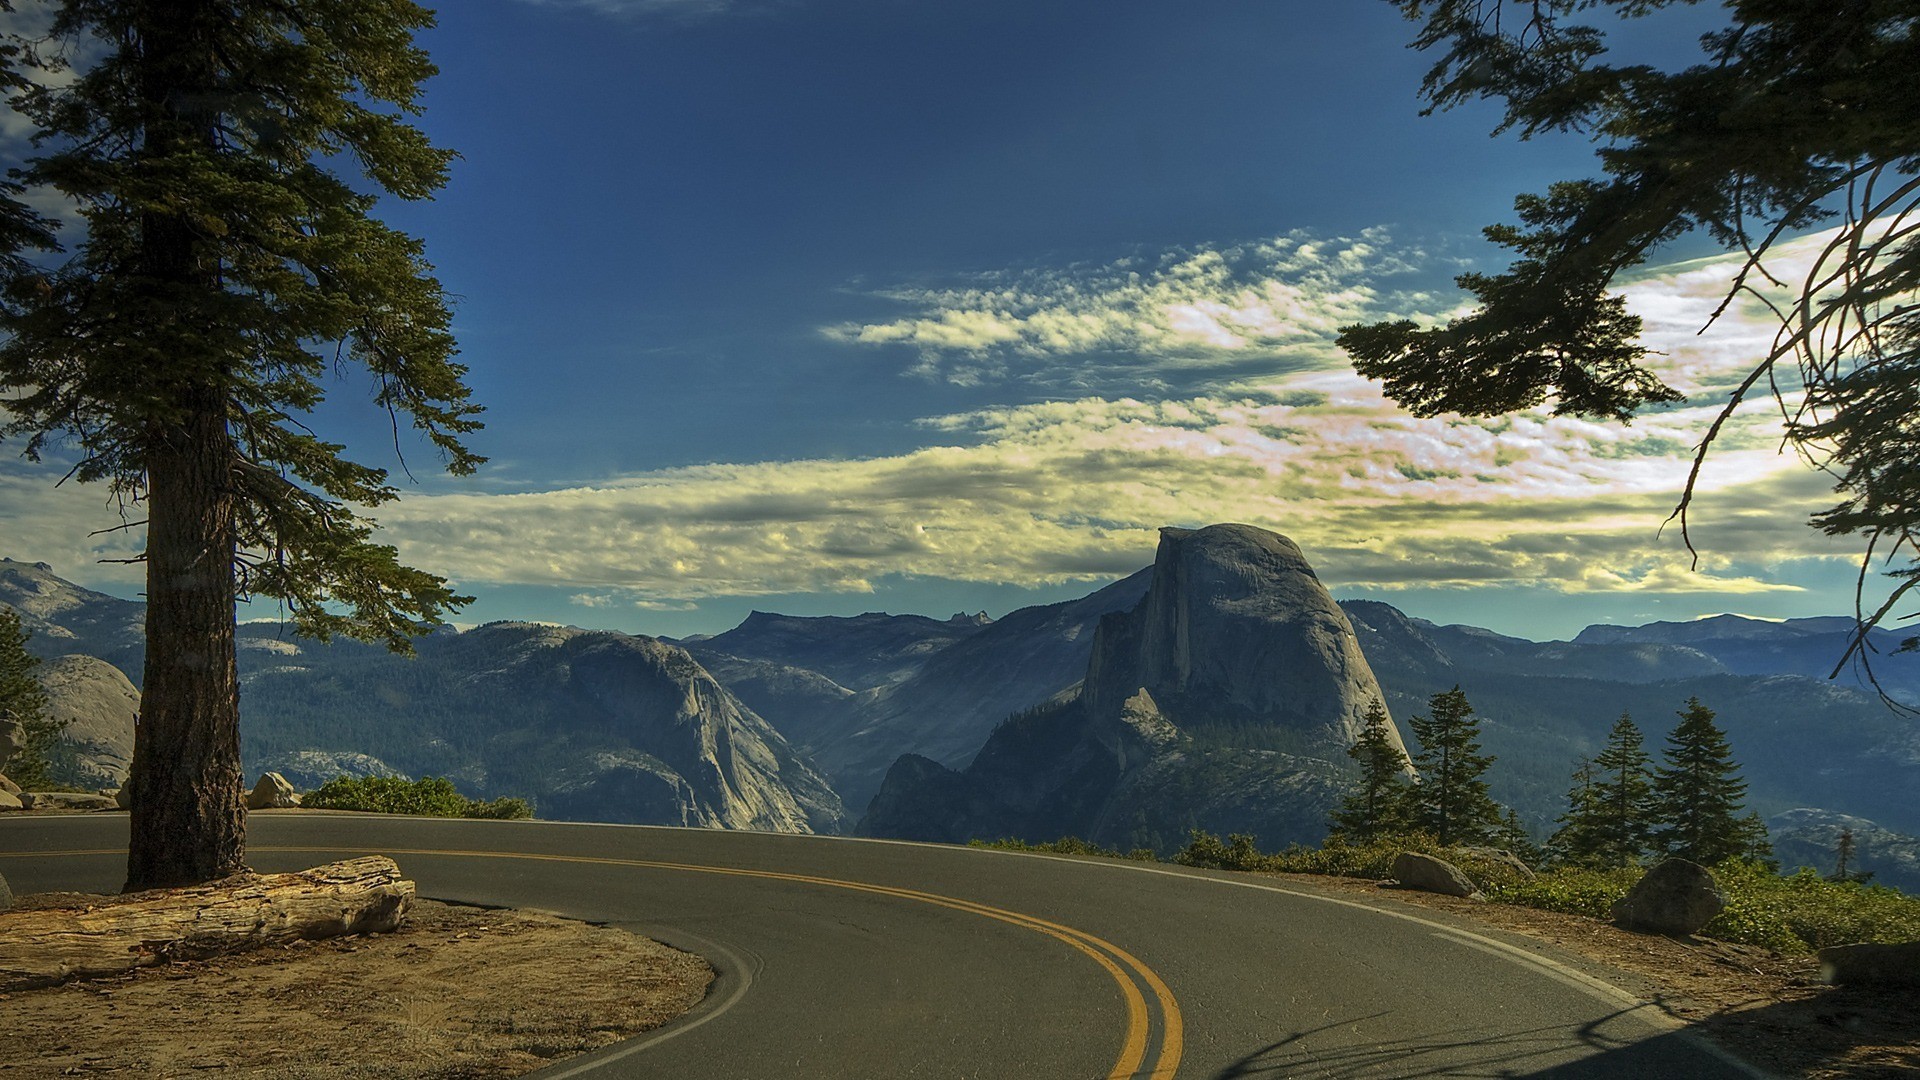 Дорога изображена в виде. Yosemite National Park дорога. Стоун-Маунтин Аппалачи. Дорога в Калифорнии Йосемите. Пейзаж с дорогой.